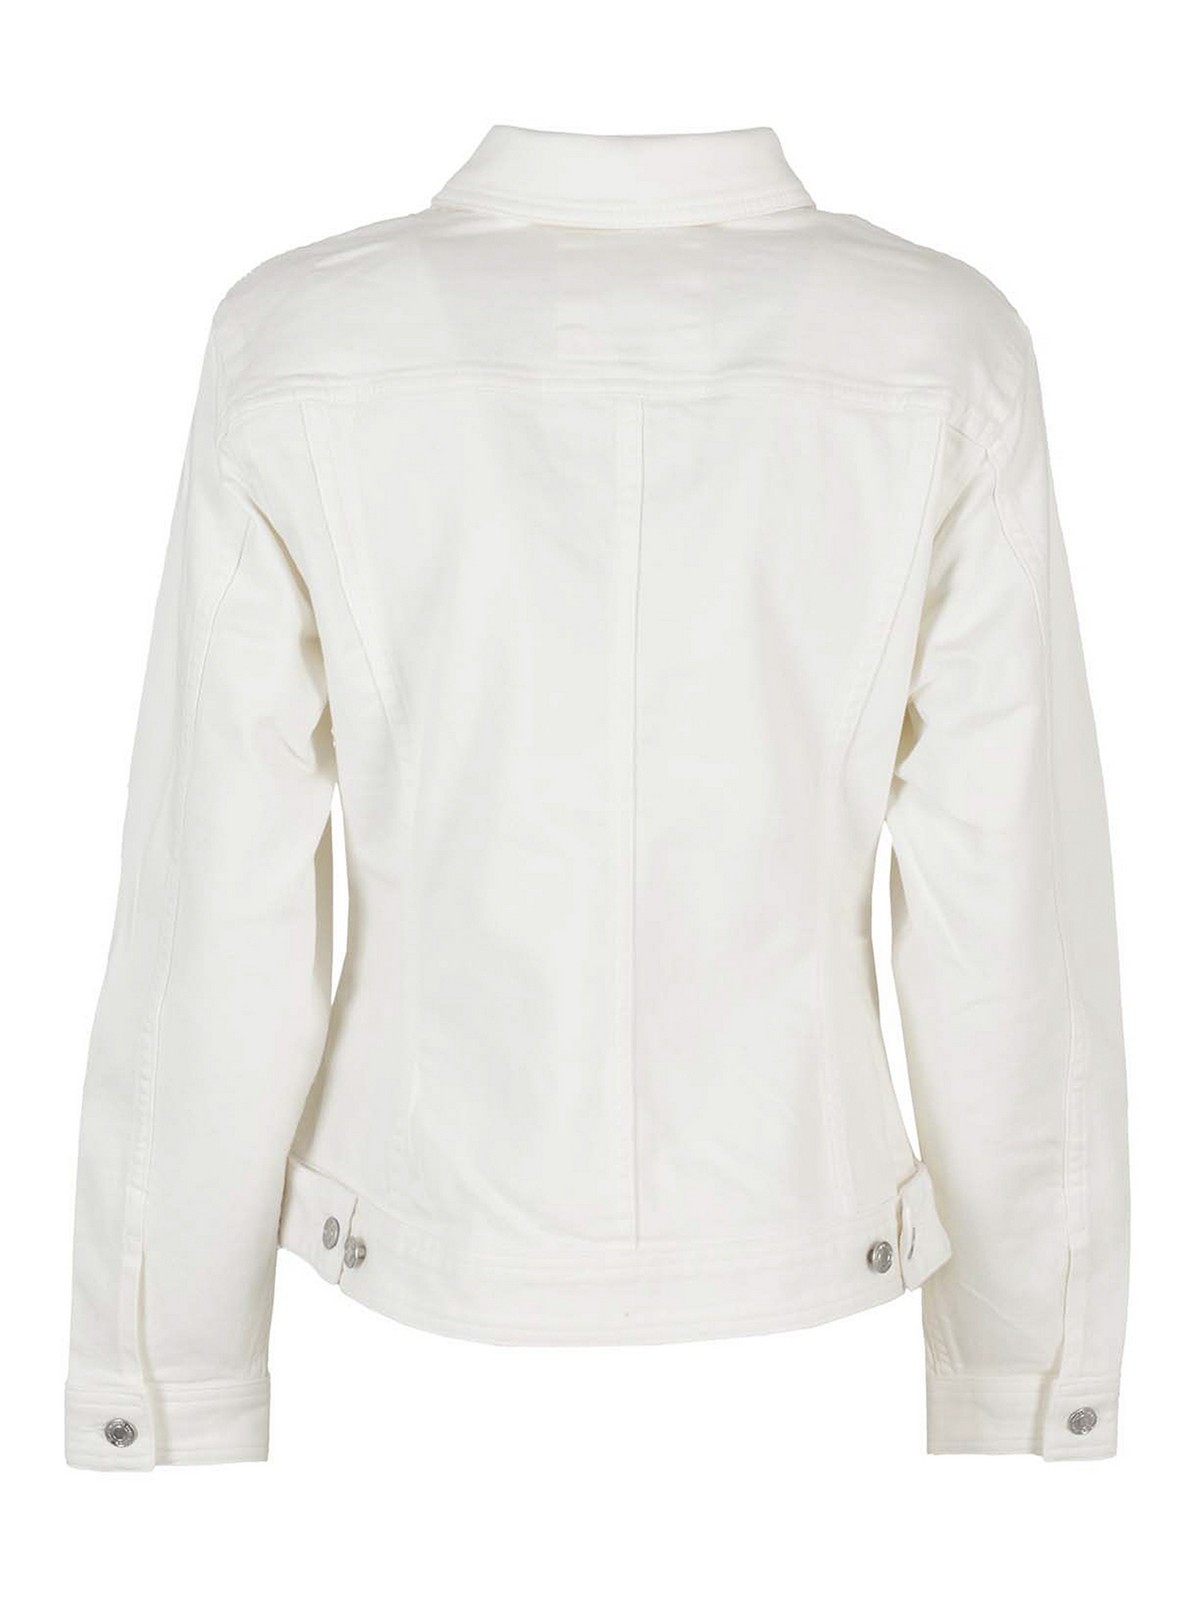 Denim jacket Michael Kors - White denim jacket - MS1100IBUG100 | iKRIX.com